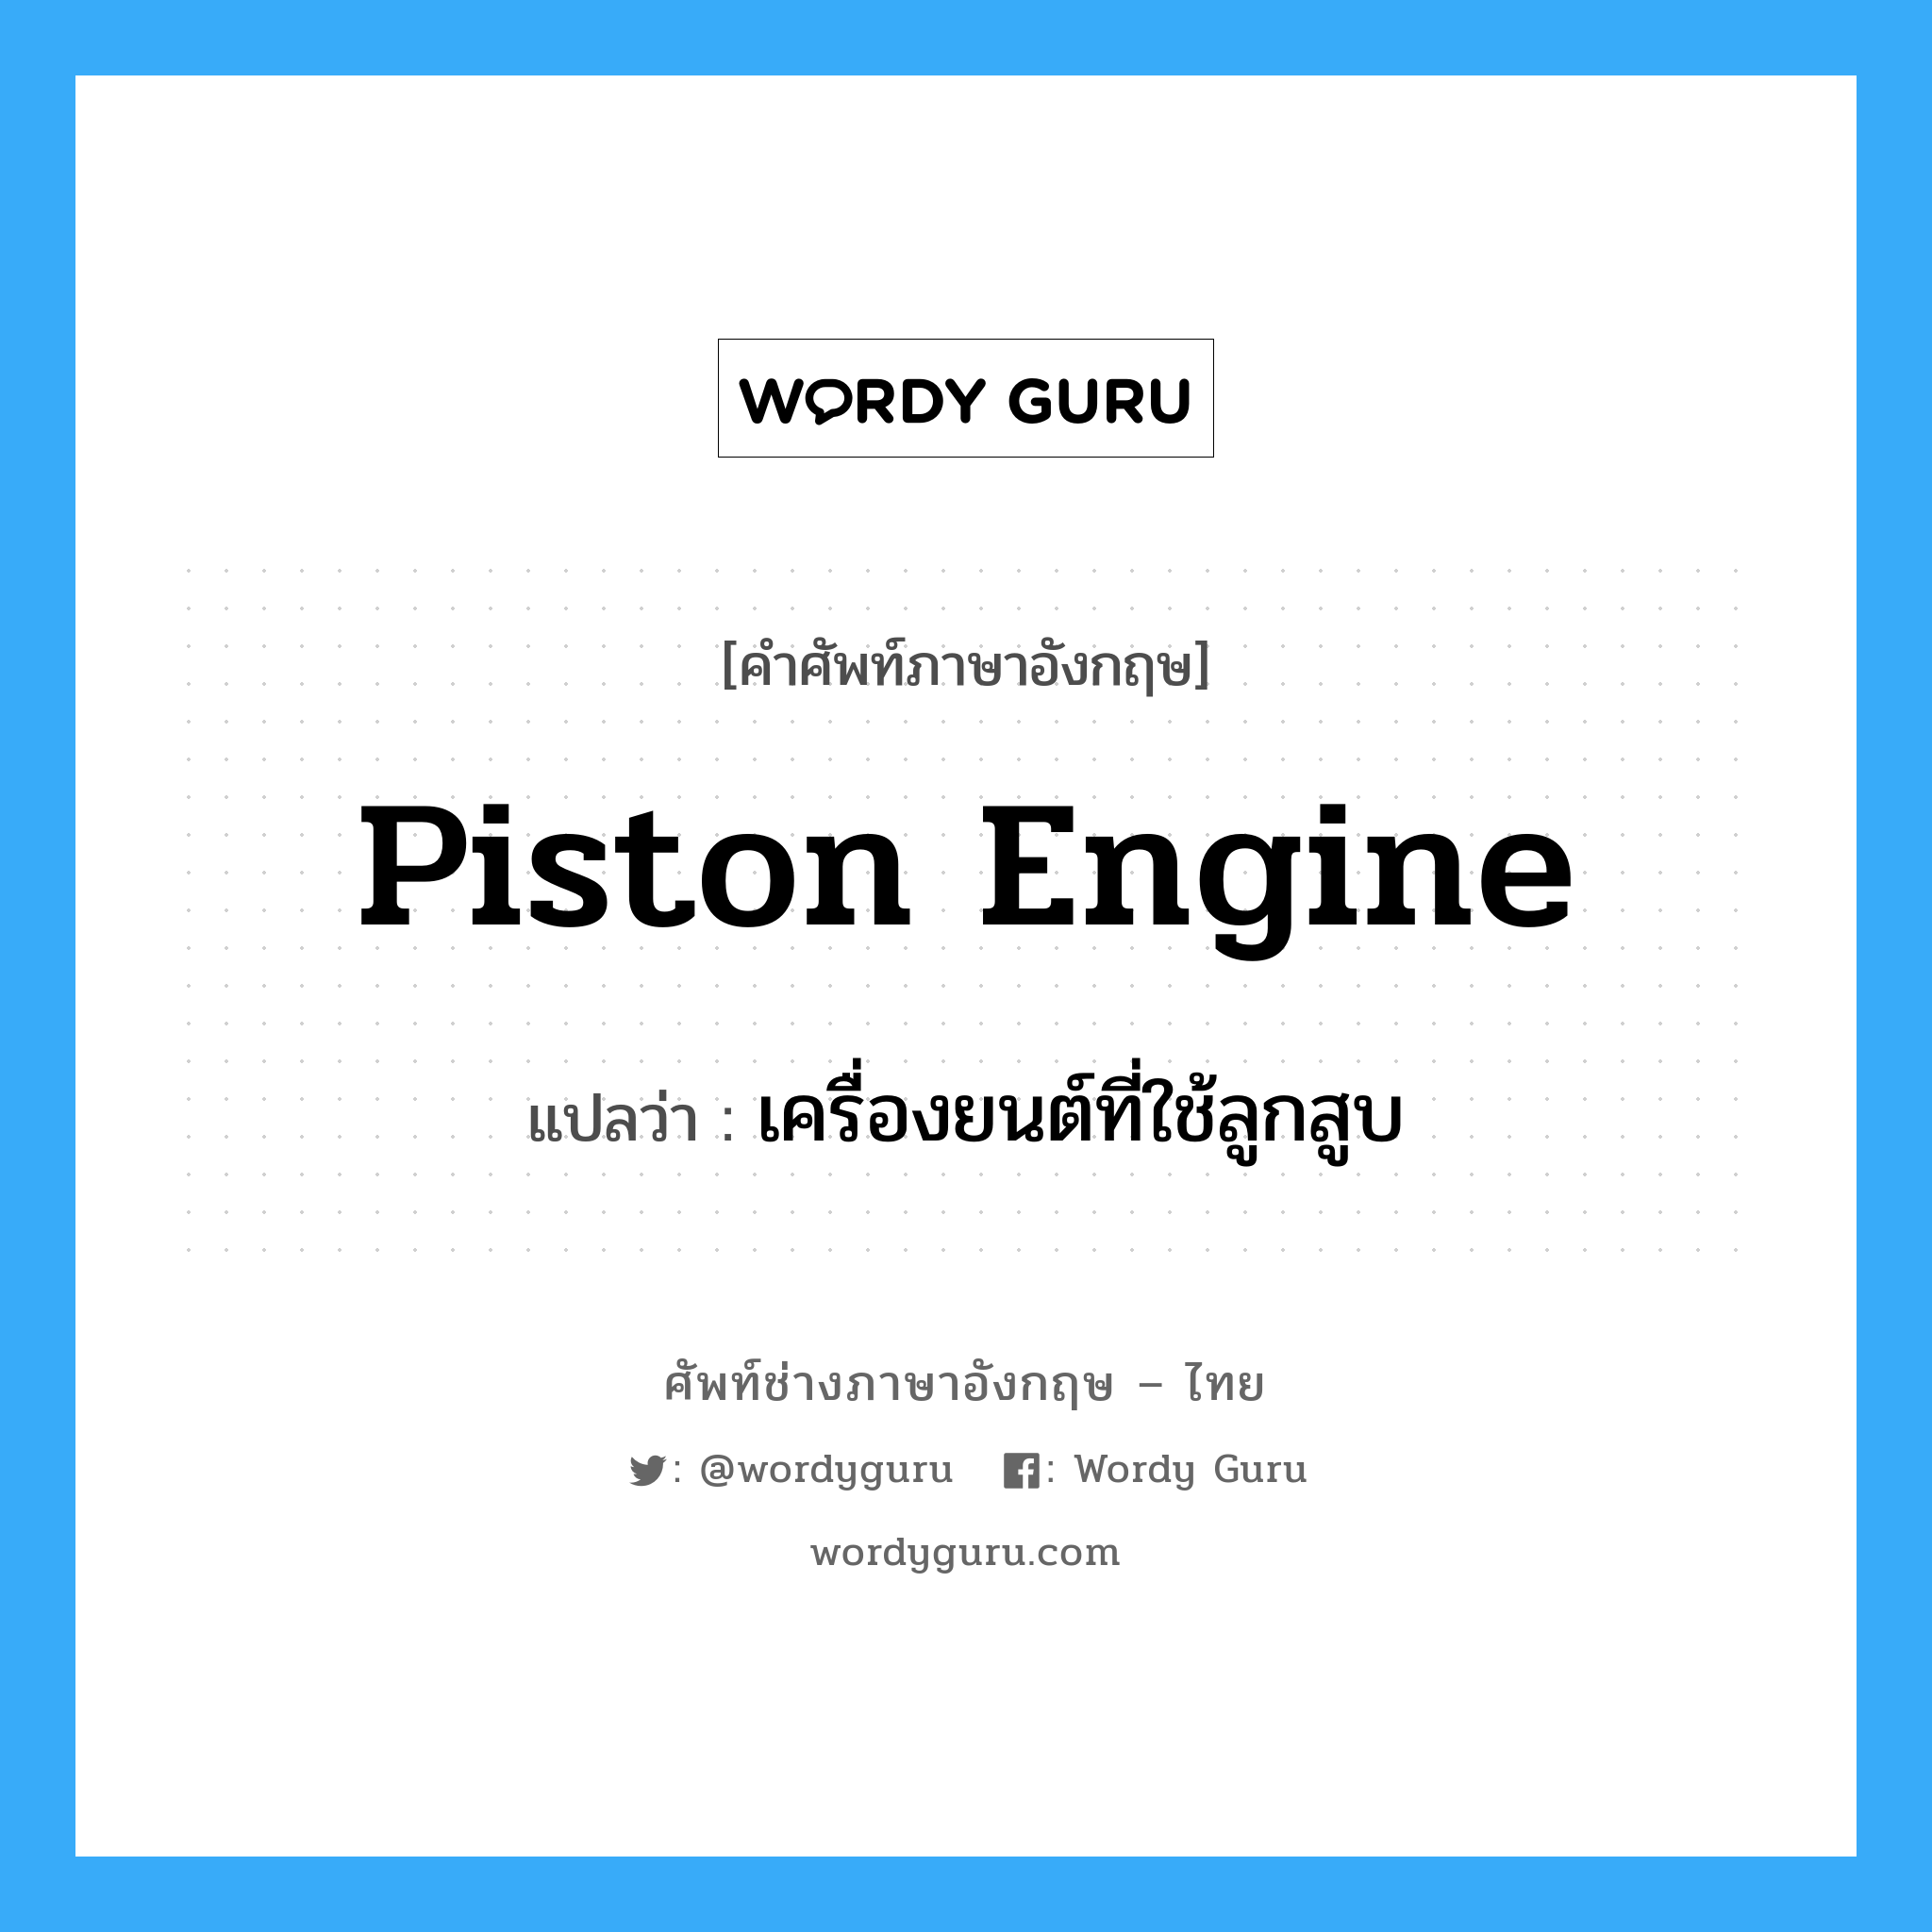 piston engine แปลว่า?, คำศัพท์ช่างภาษาอังกฤษ - ไทย piston engine คำศัพท์ภาษาอังกฤษ piston engine แปลว่า เครื่องยนต์ที่ใช้ลูกสูบ